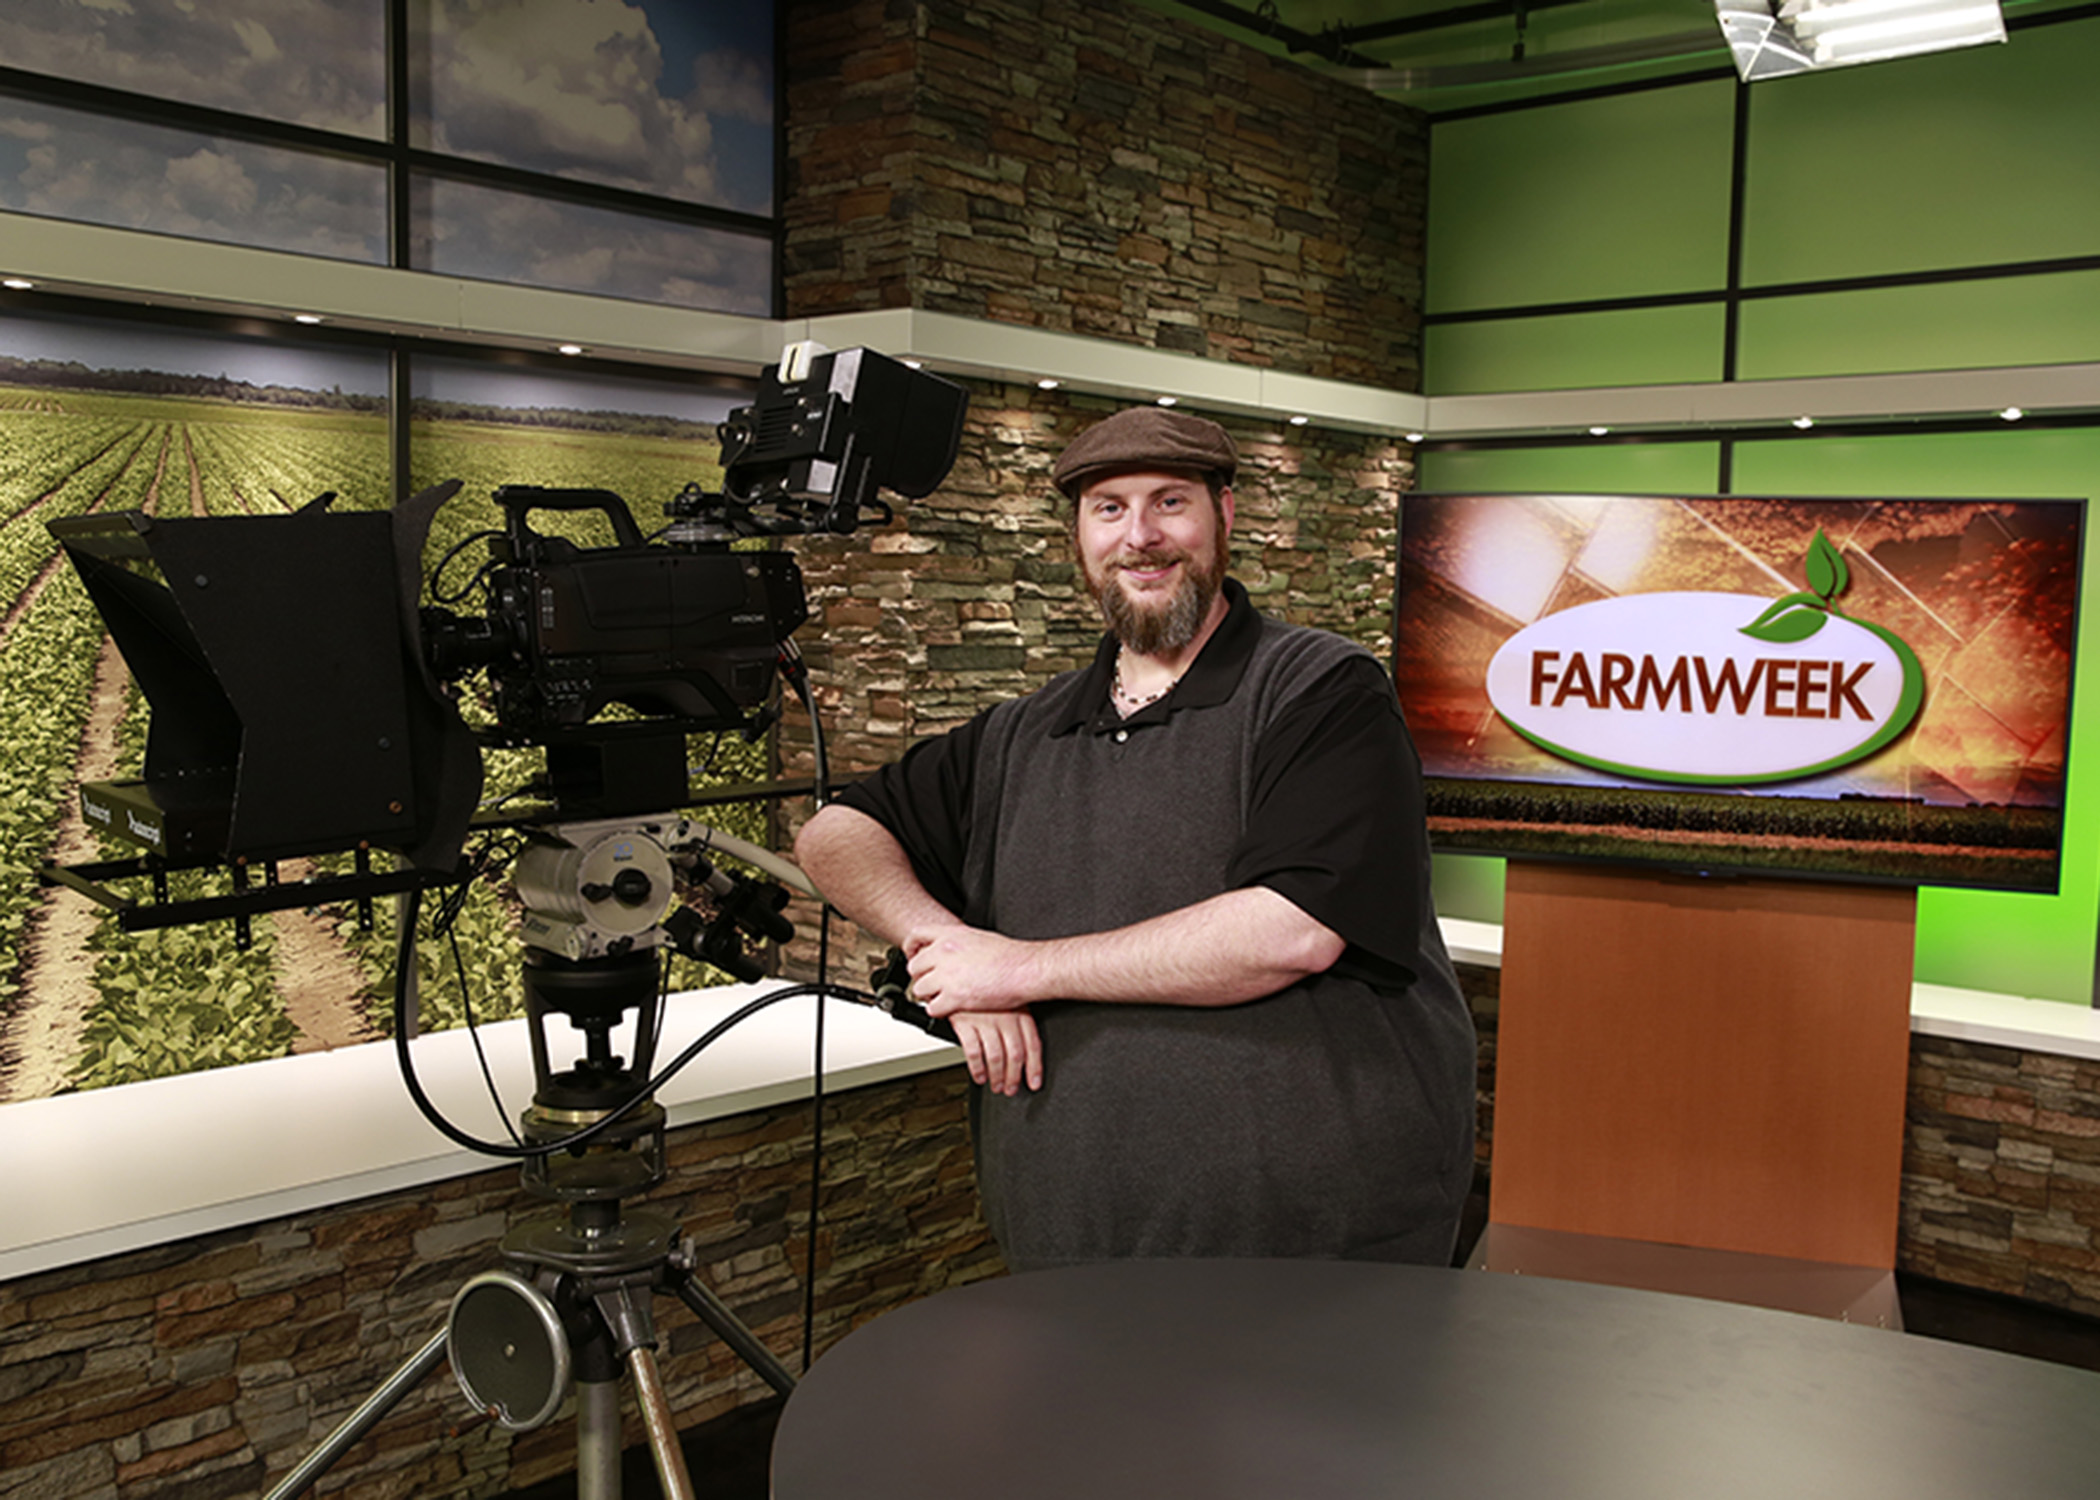 Bearded man in hat on Farmweek TV studio set.